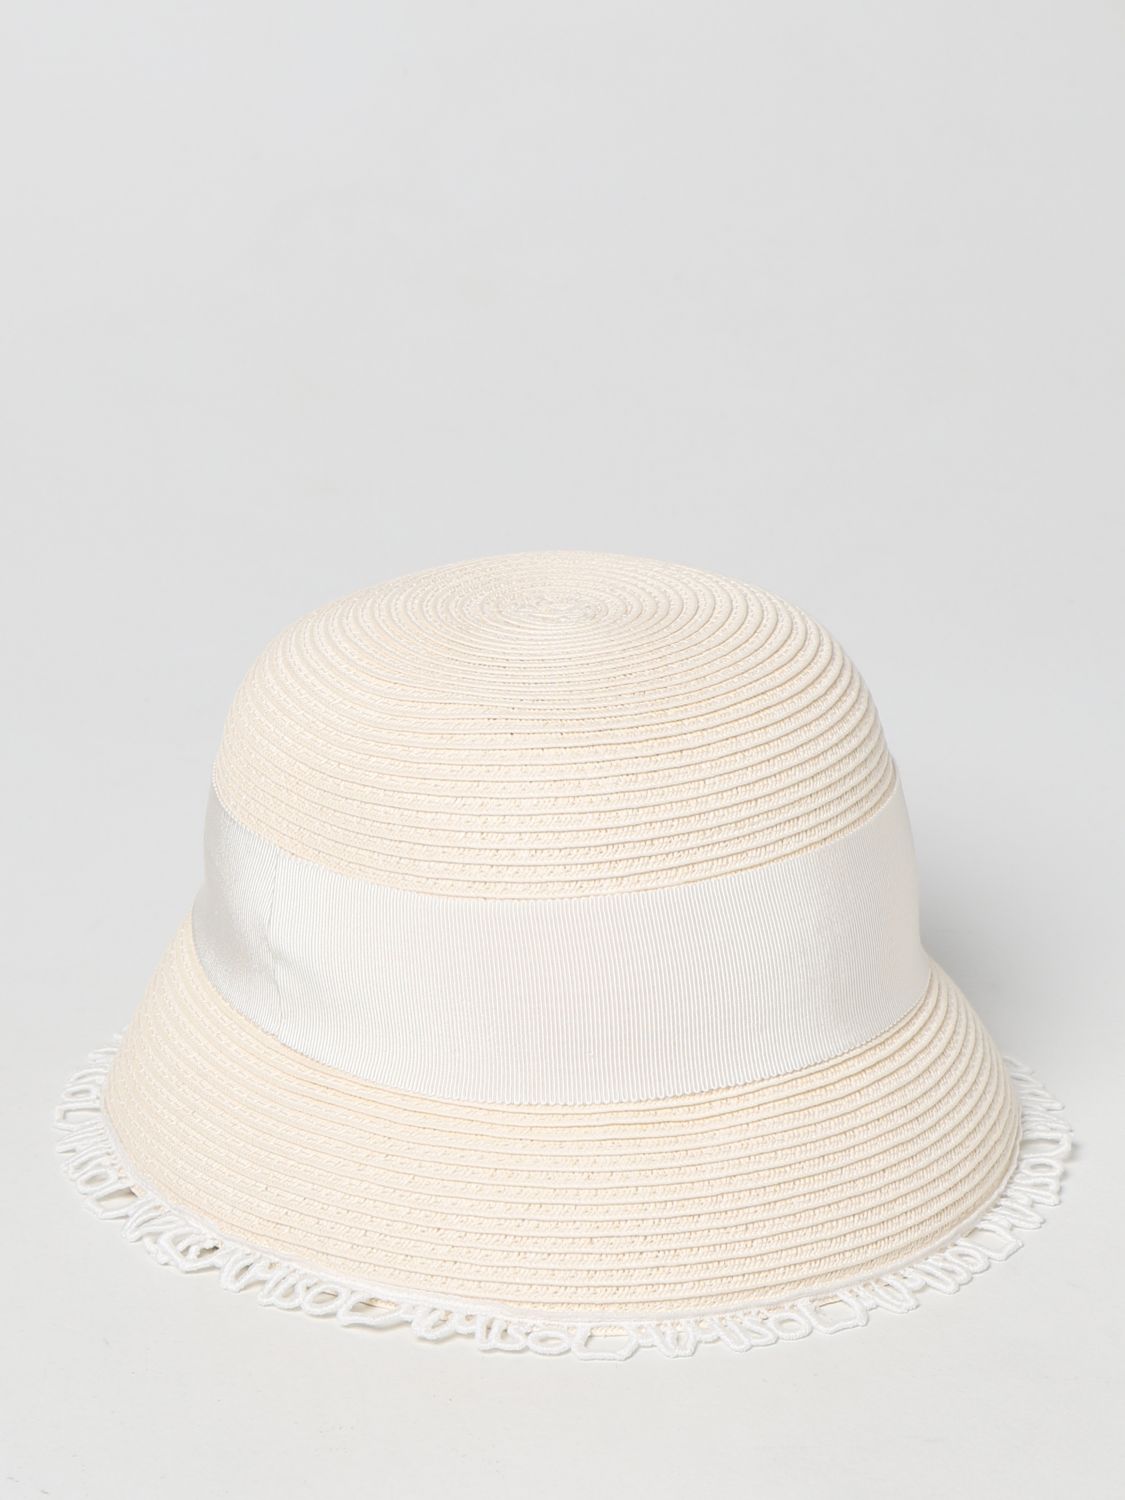 Hüte für Mädchen Mi Mi Sol: Mi Mi Sol Kinder hüte für mädchen yellow cream 2